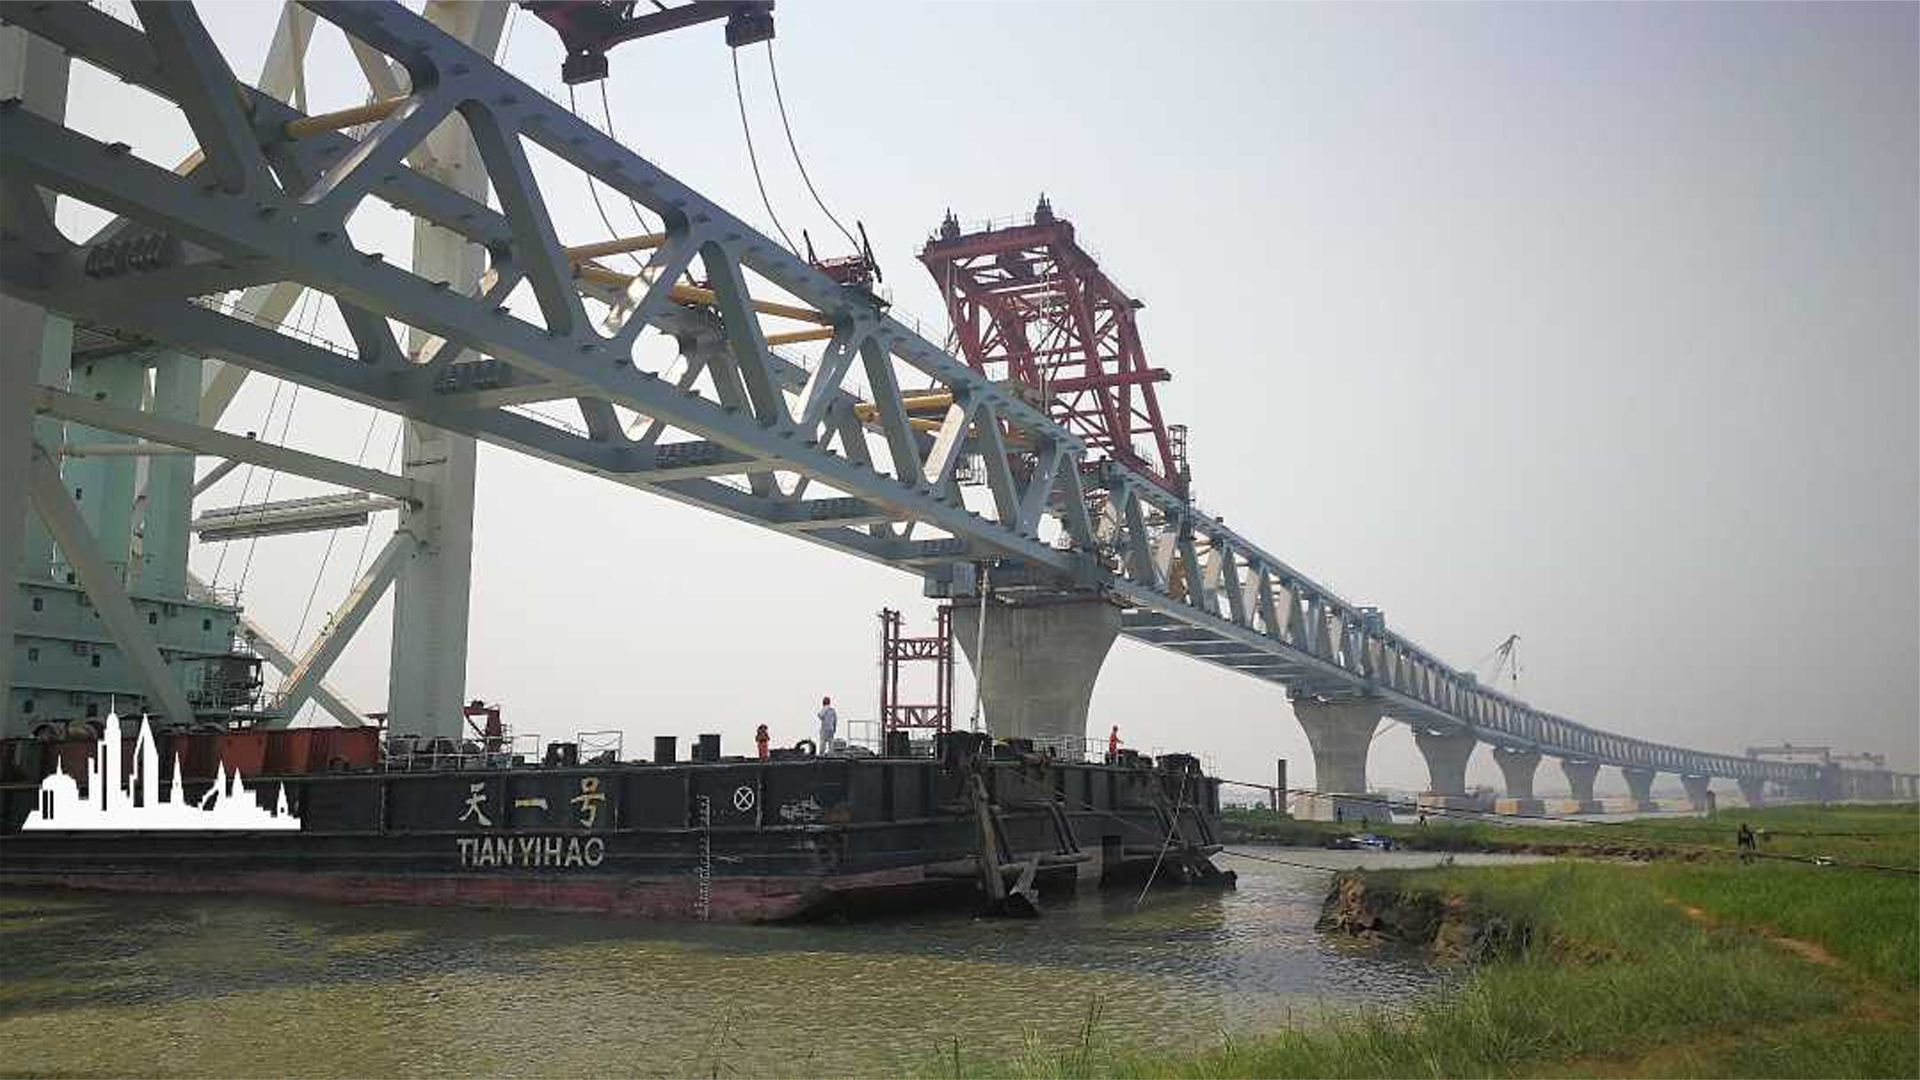 让众多国家知难而退的帕德玛大桥,中国交满分答卷,架起梦想之桥